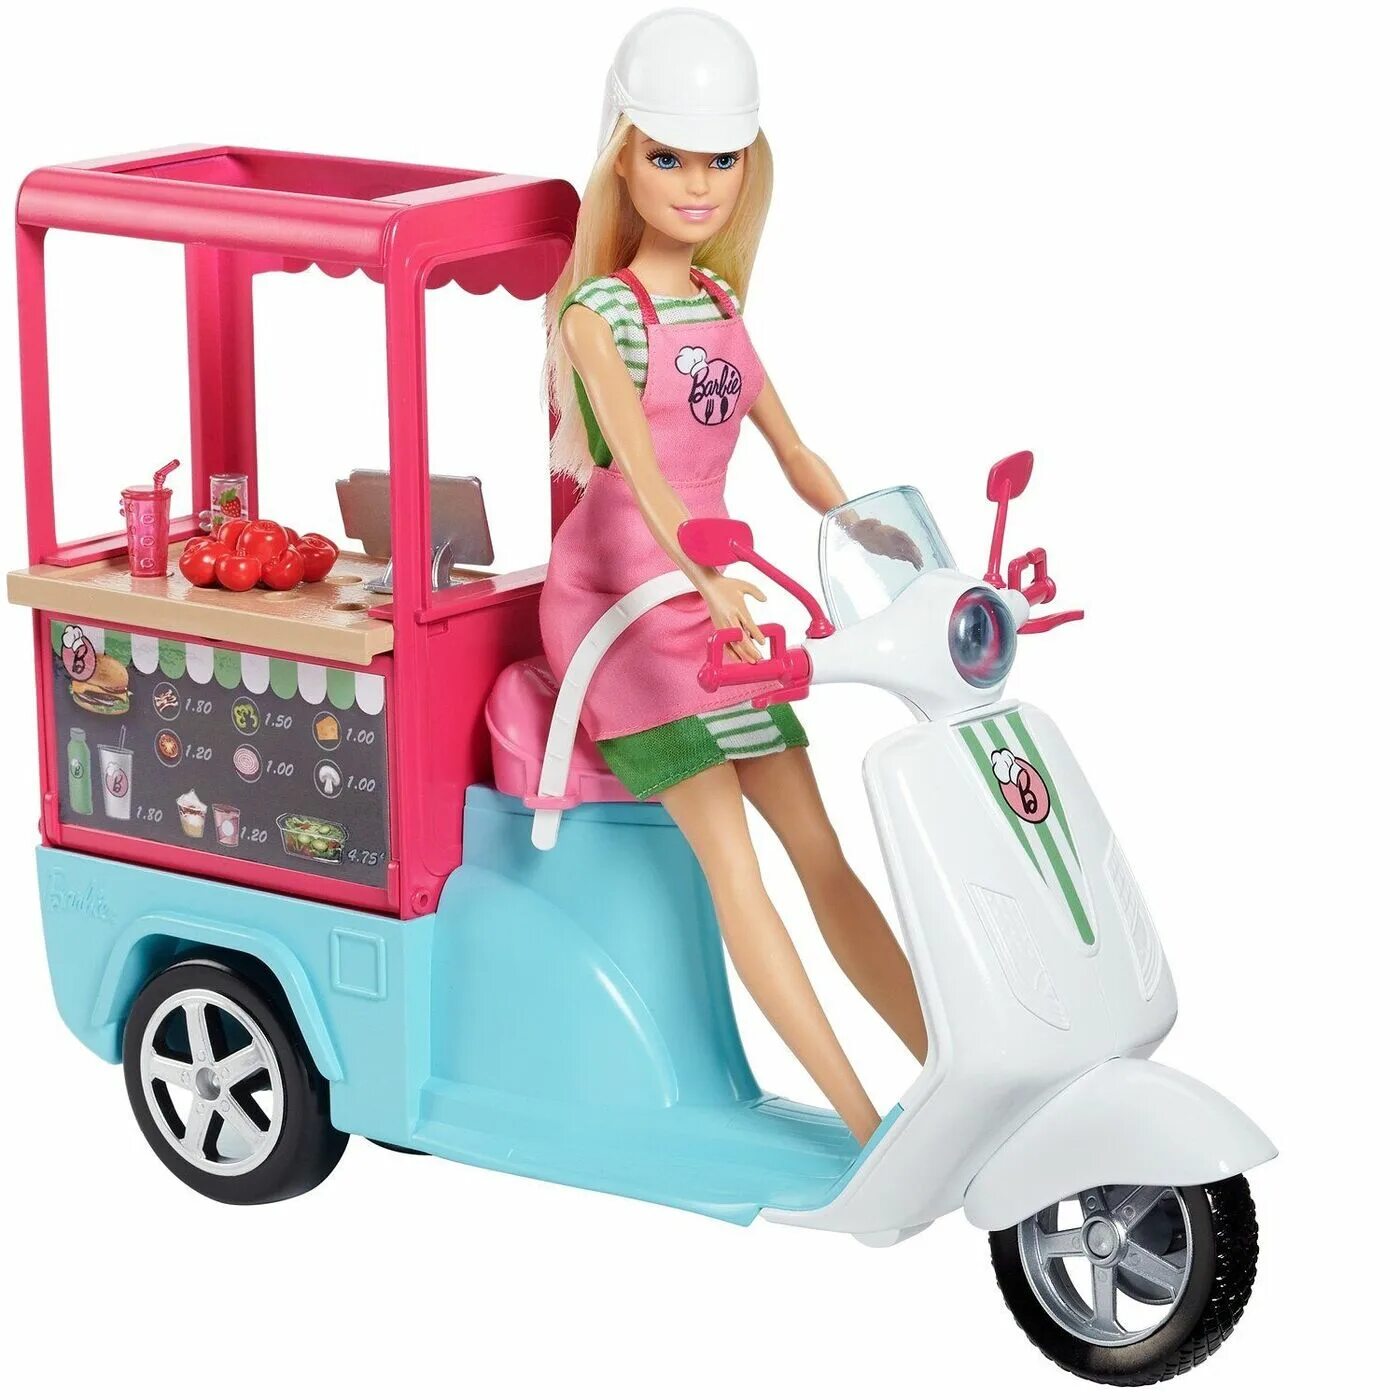 Скутер Barbie бистро fhr08. Игрушки Барби. Игровой набор Барби. Игрушки для девочек Барби.